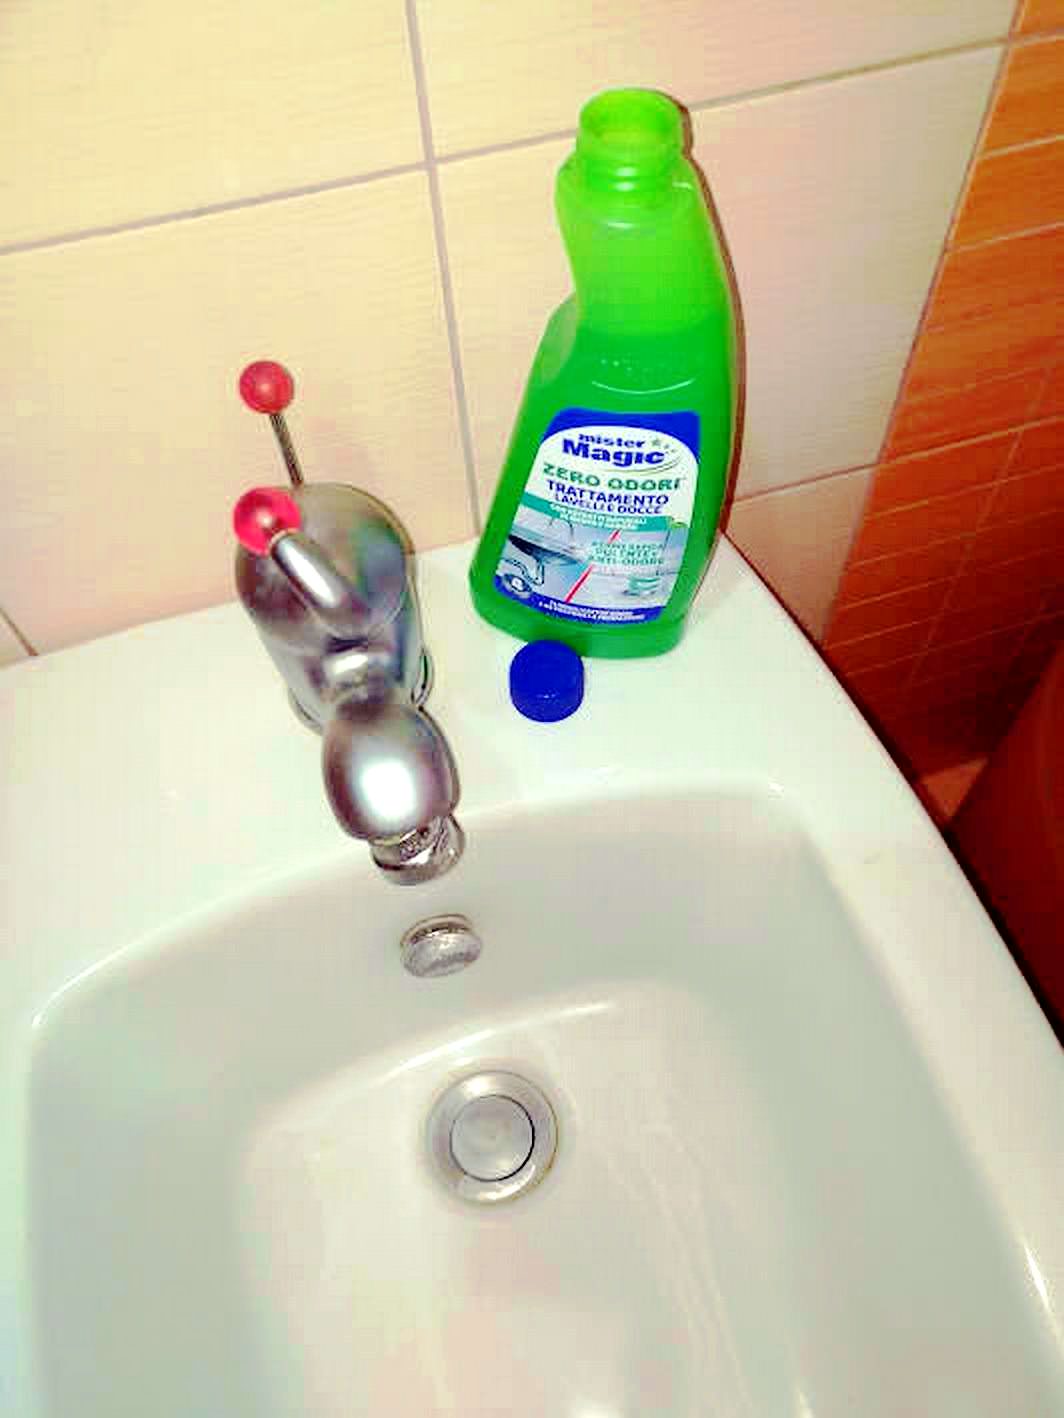 Corretta manutenzione degli scarichi domestici con Mister Magic: zero odori trattamento lavelli e docce